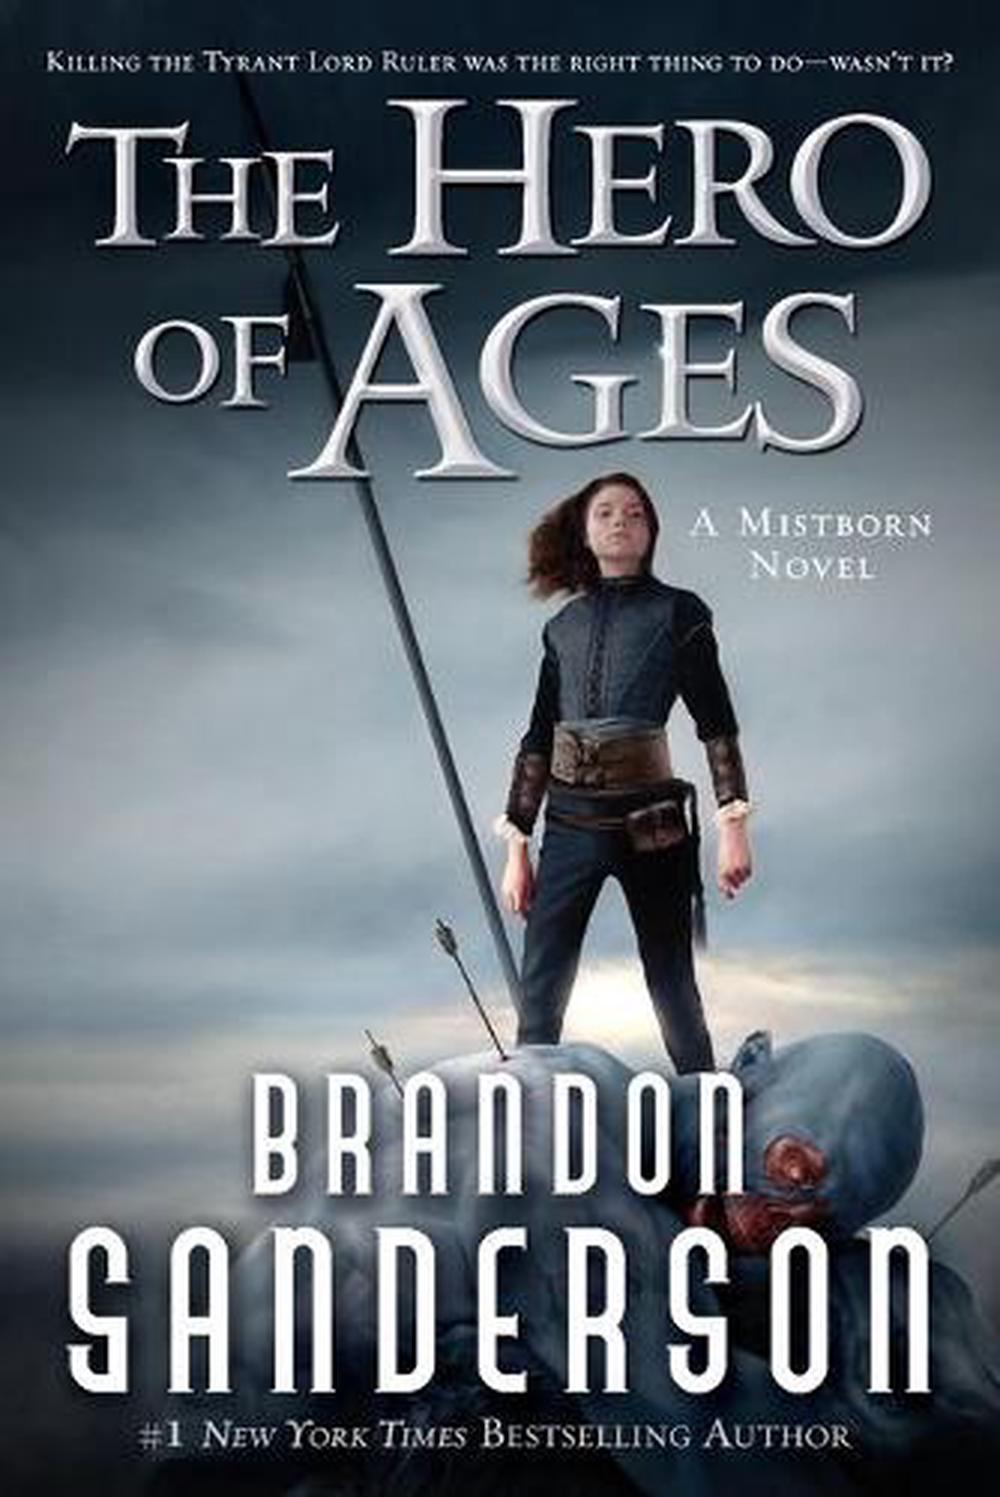 brandon sanderson best book series